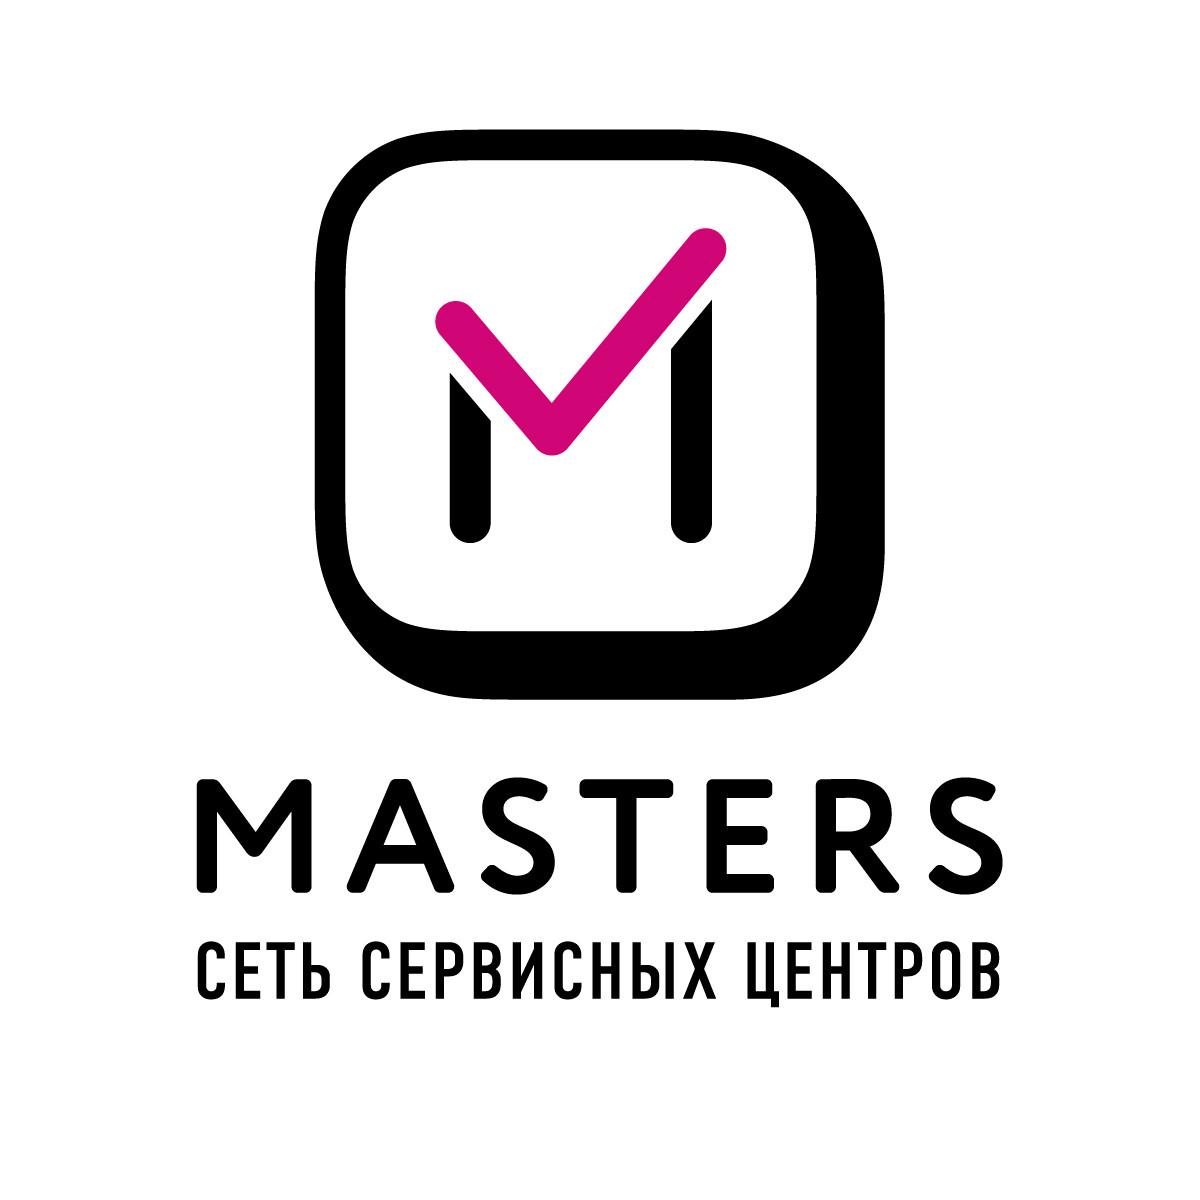 Сервисный центр Masters в Климентовском переулке